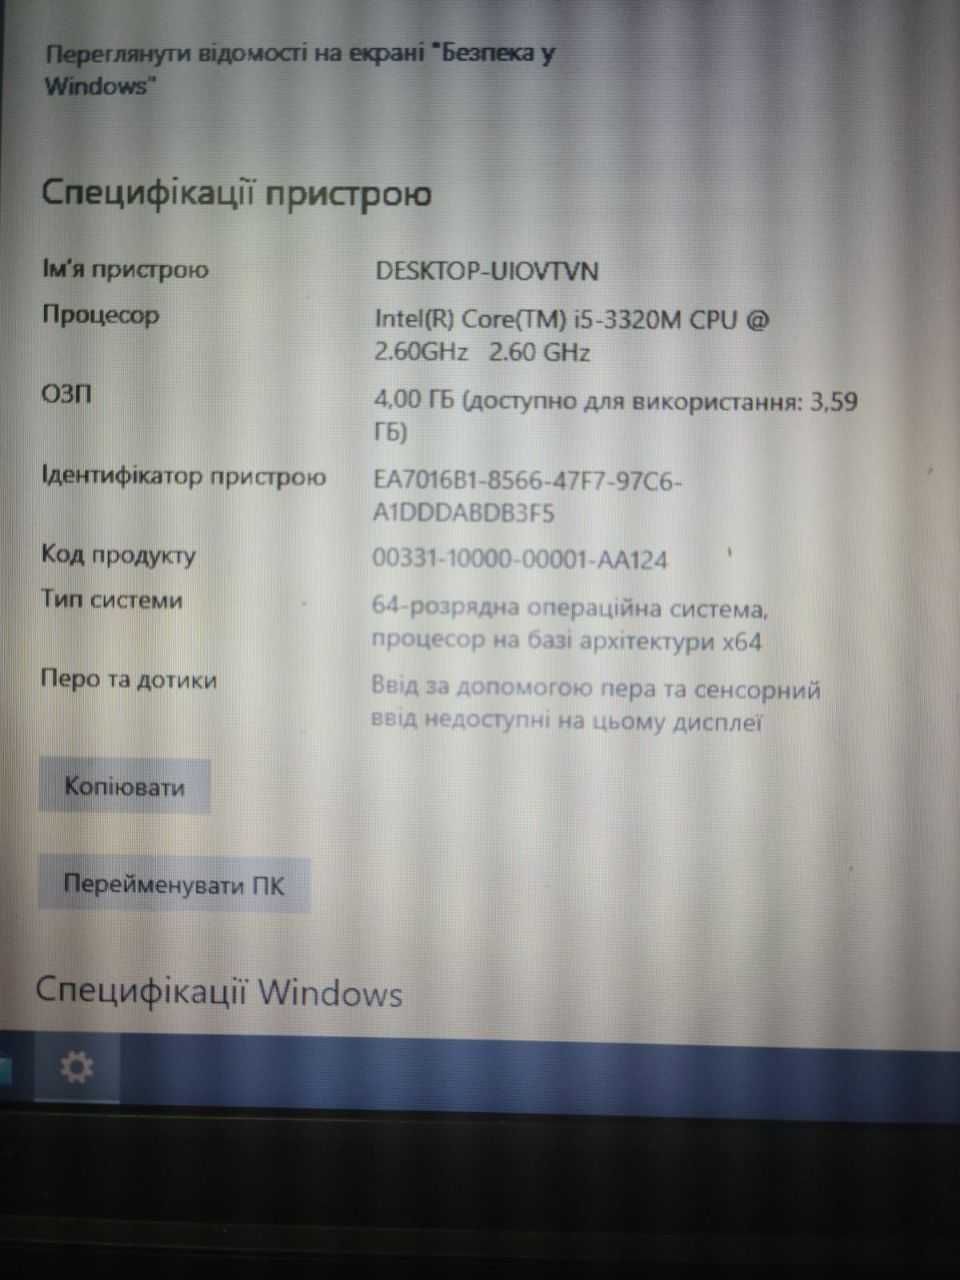 Lenovo ThinkPad L530 (2478CA3)